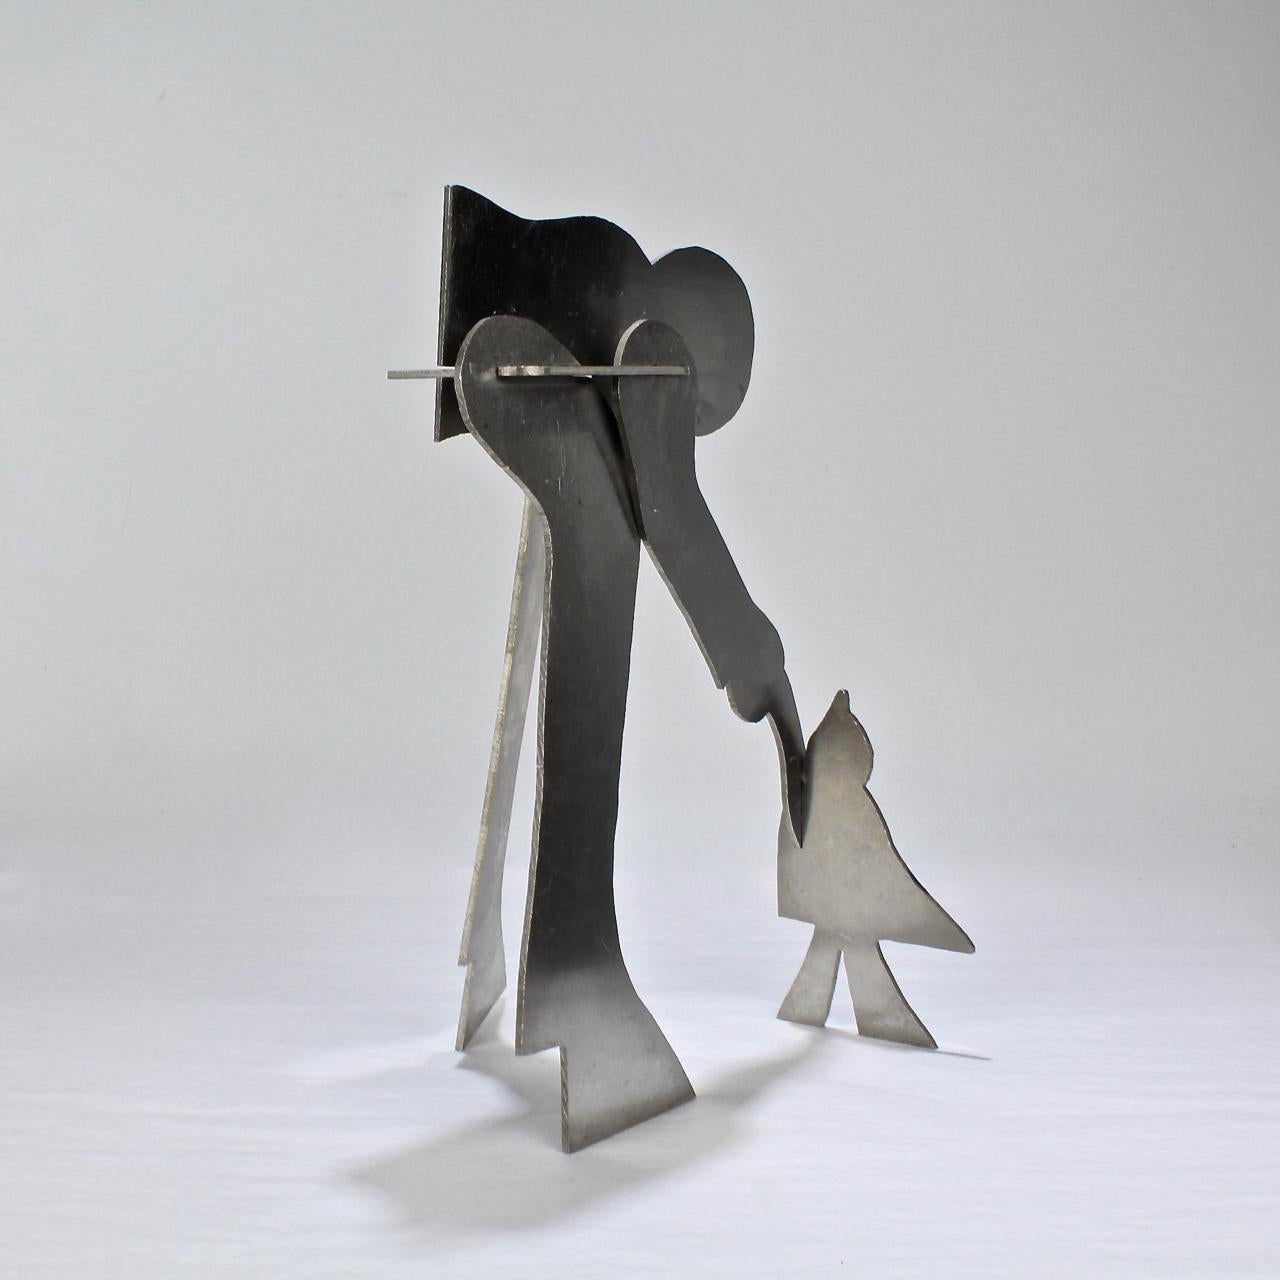 Une sculpture en aluminium de style moderne du milieu du siècle représentant un homme et un oiseau (ou peut-être un enfant ?).

William D. King (1925-2015)

Cette sculpture en aluminium enchevêtrée fait partie d'une série qui a été vendue